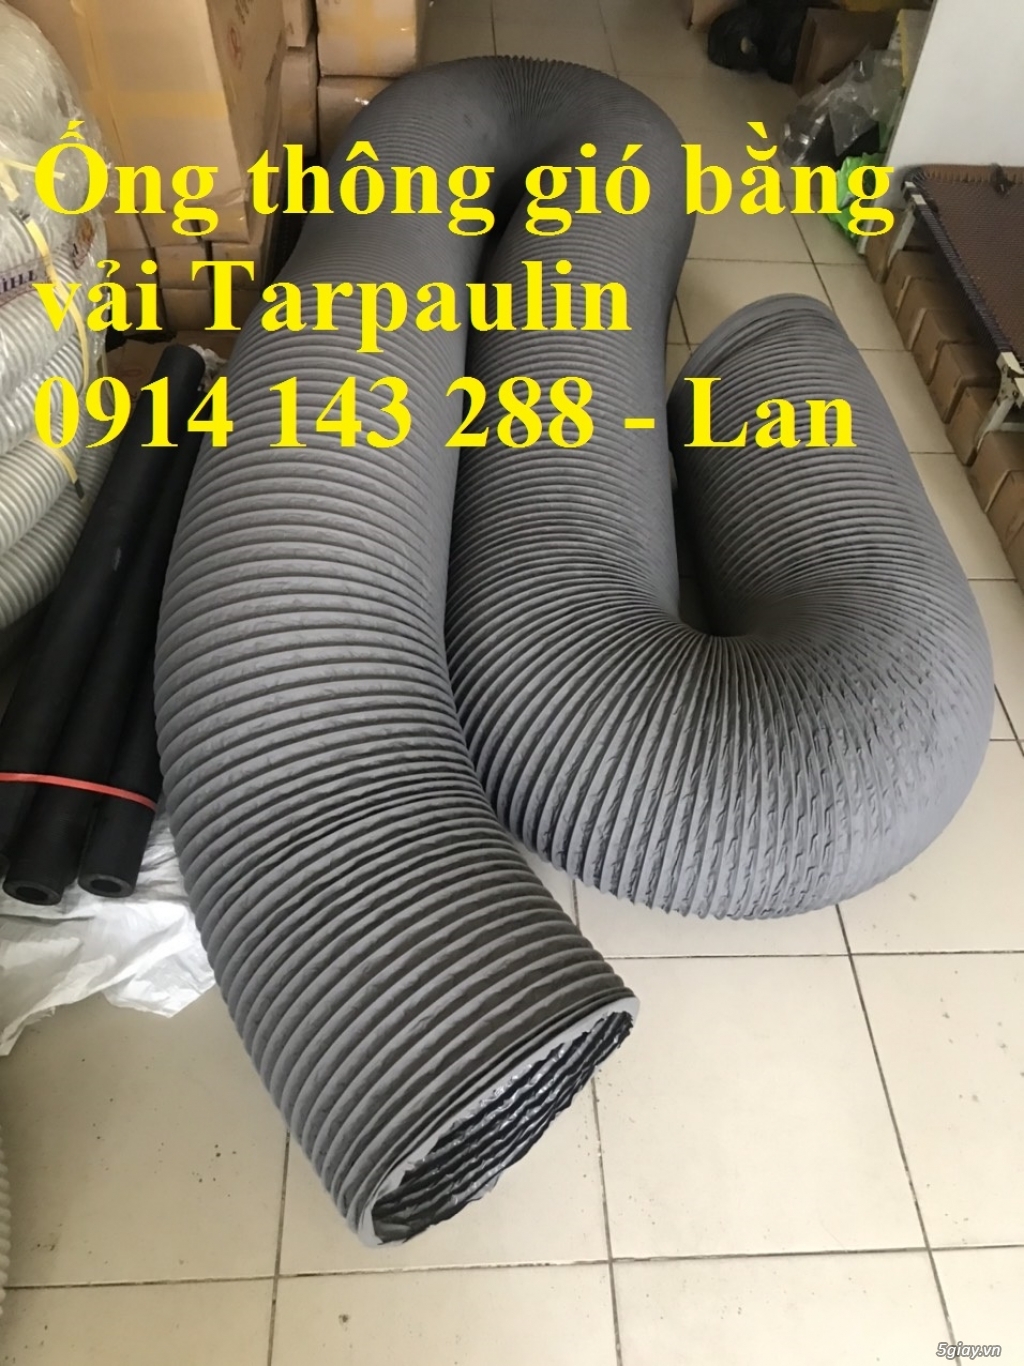 Ống gió mềm vải Hàn Quốc D250 chính hãng giá rẻ - 096 717 3304 - 4